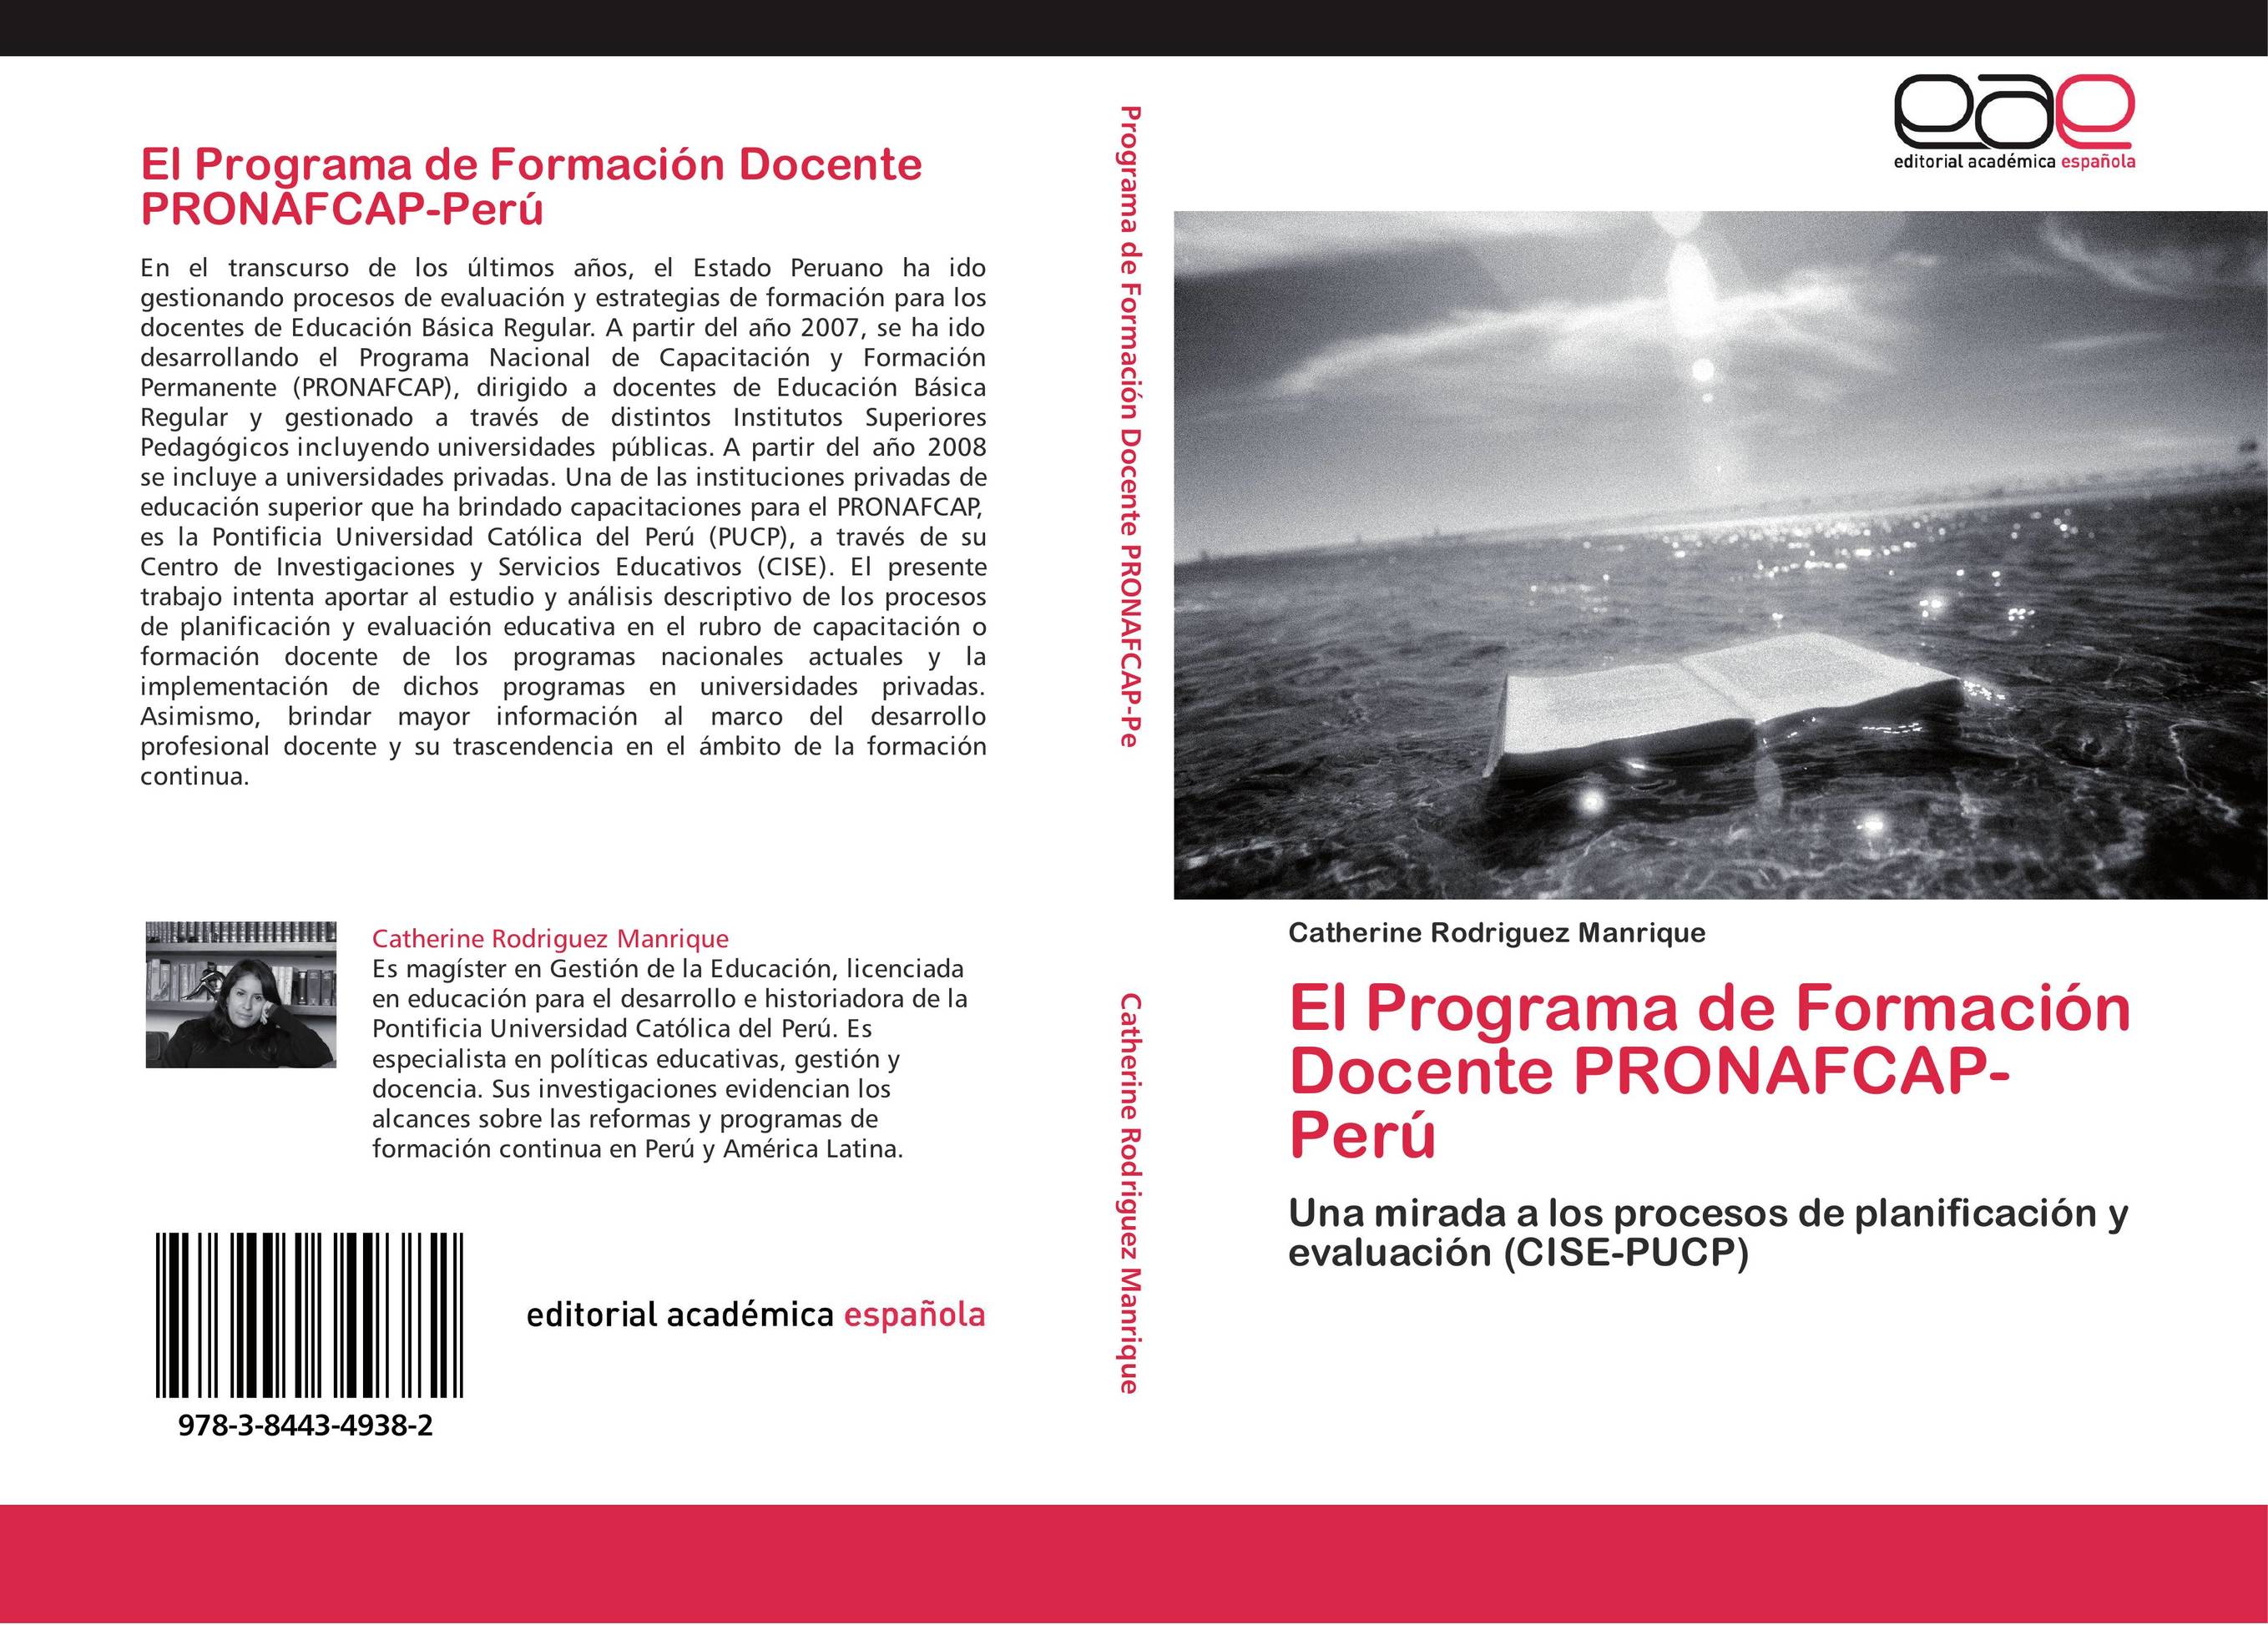 El Programa de Formación Docente PRONAFCAP-Perú